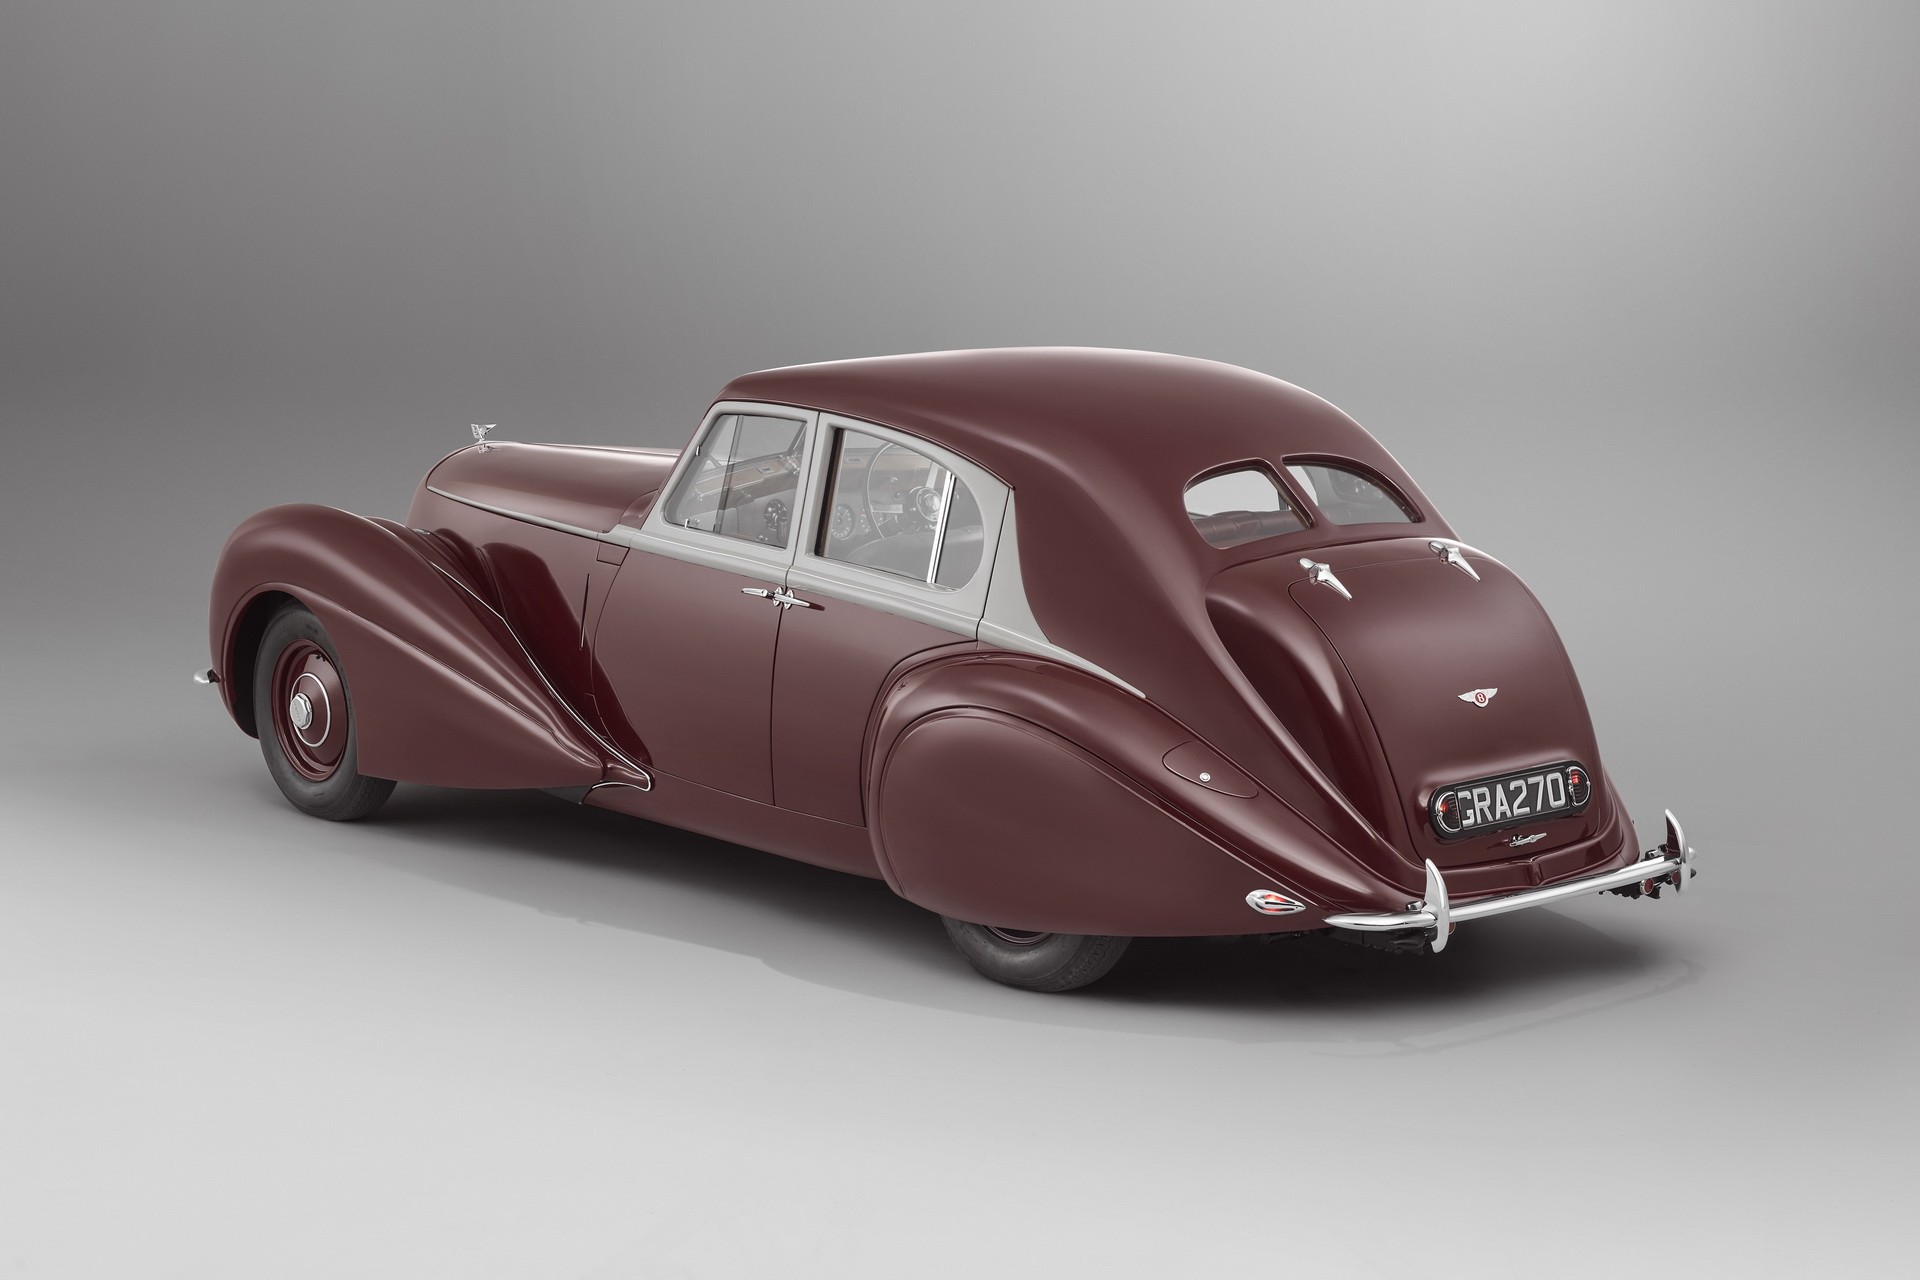 Уникальный Bentley Mark v Corniche 1939 года отправляется в путь впервые за 84 года